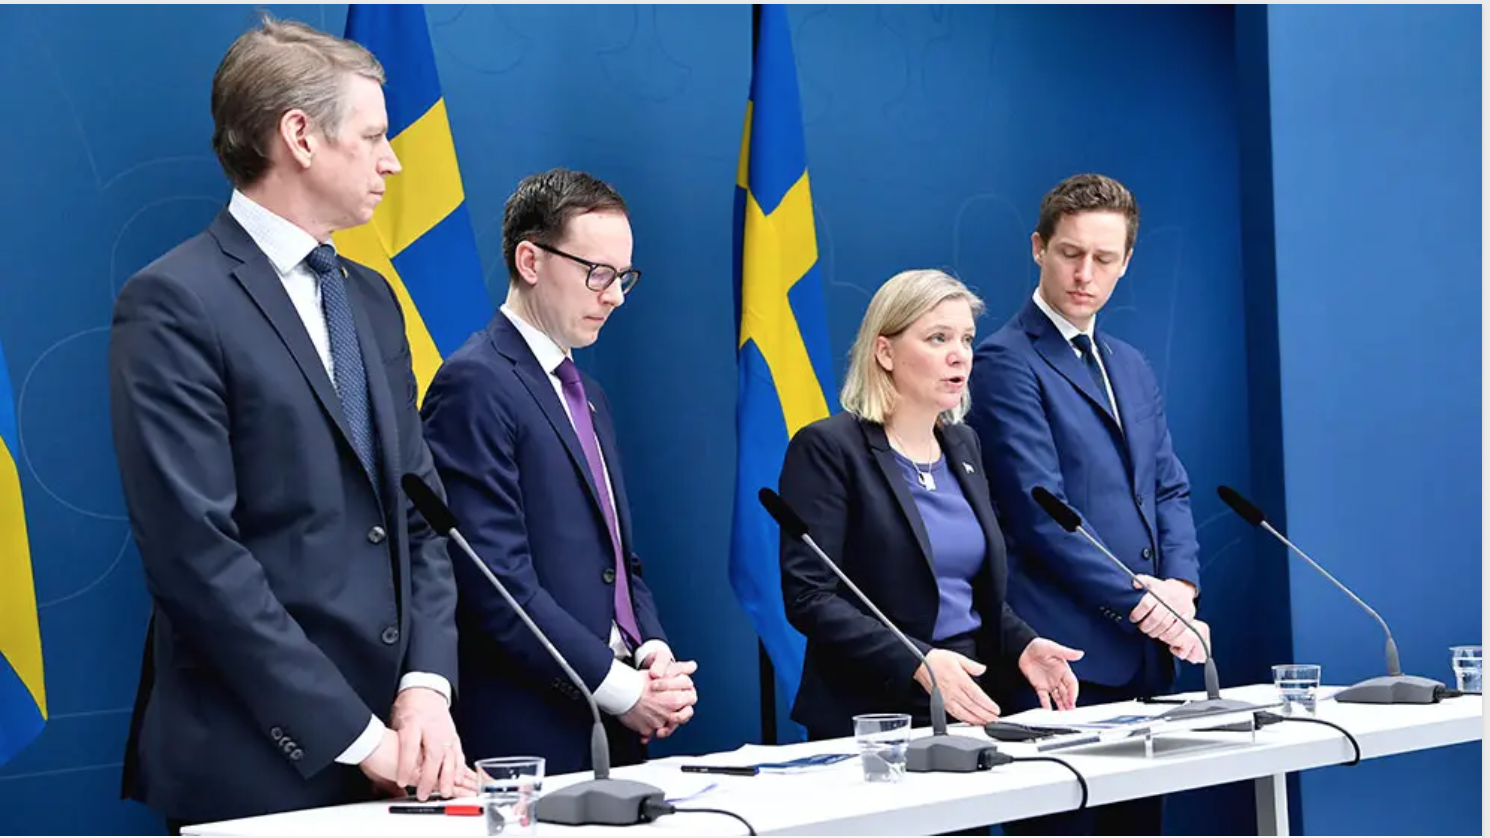 Правительство Швеции готово выделить до 300 миллиардов крон для поддержки компаний и рабочих мест из-за COVID-19